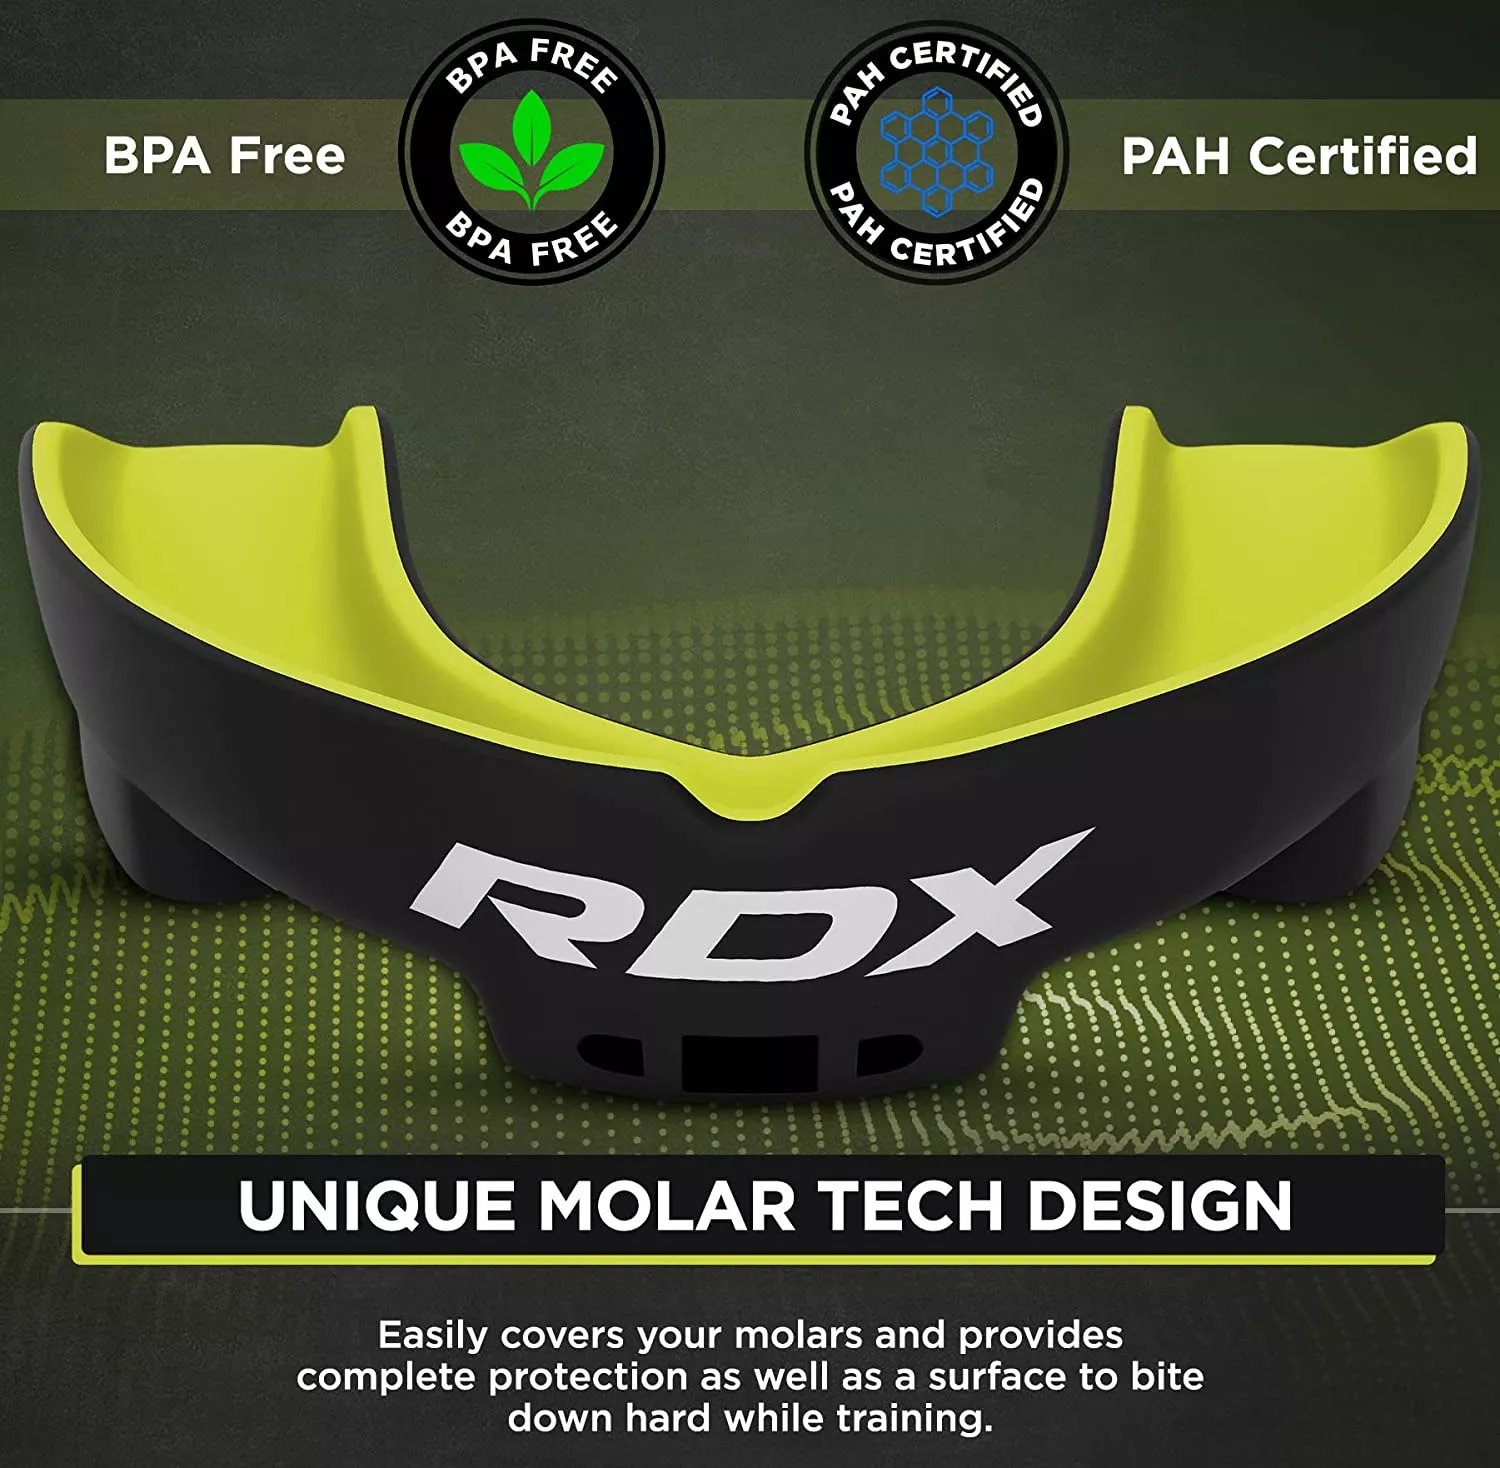 Капа боксерська RDX Gel 3D Pro Black/Green-взрослая